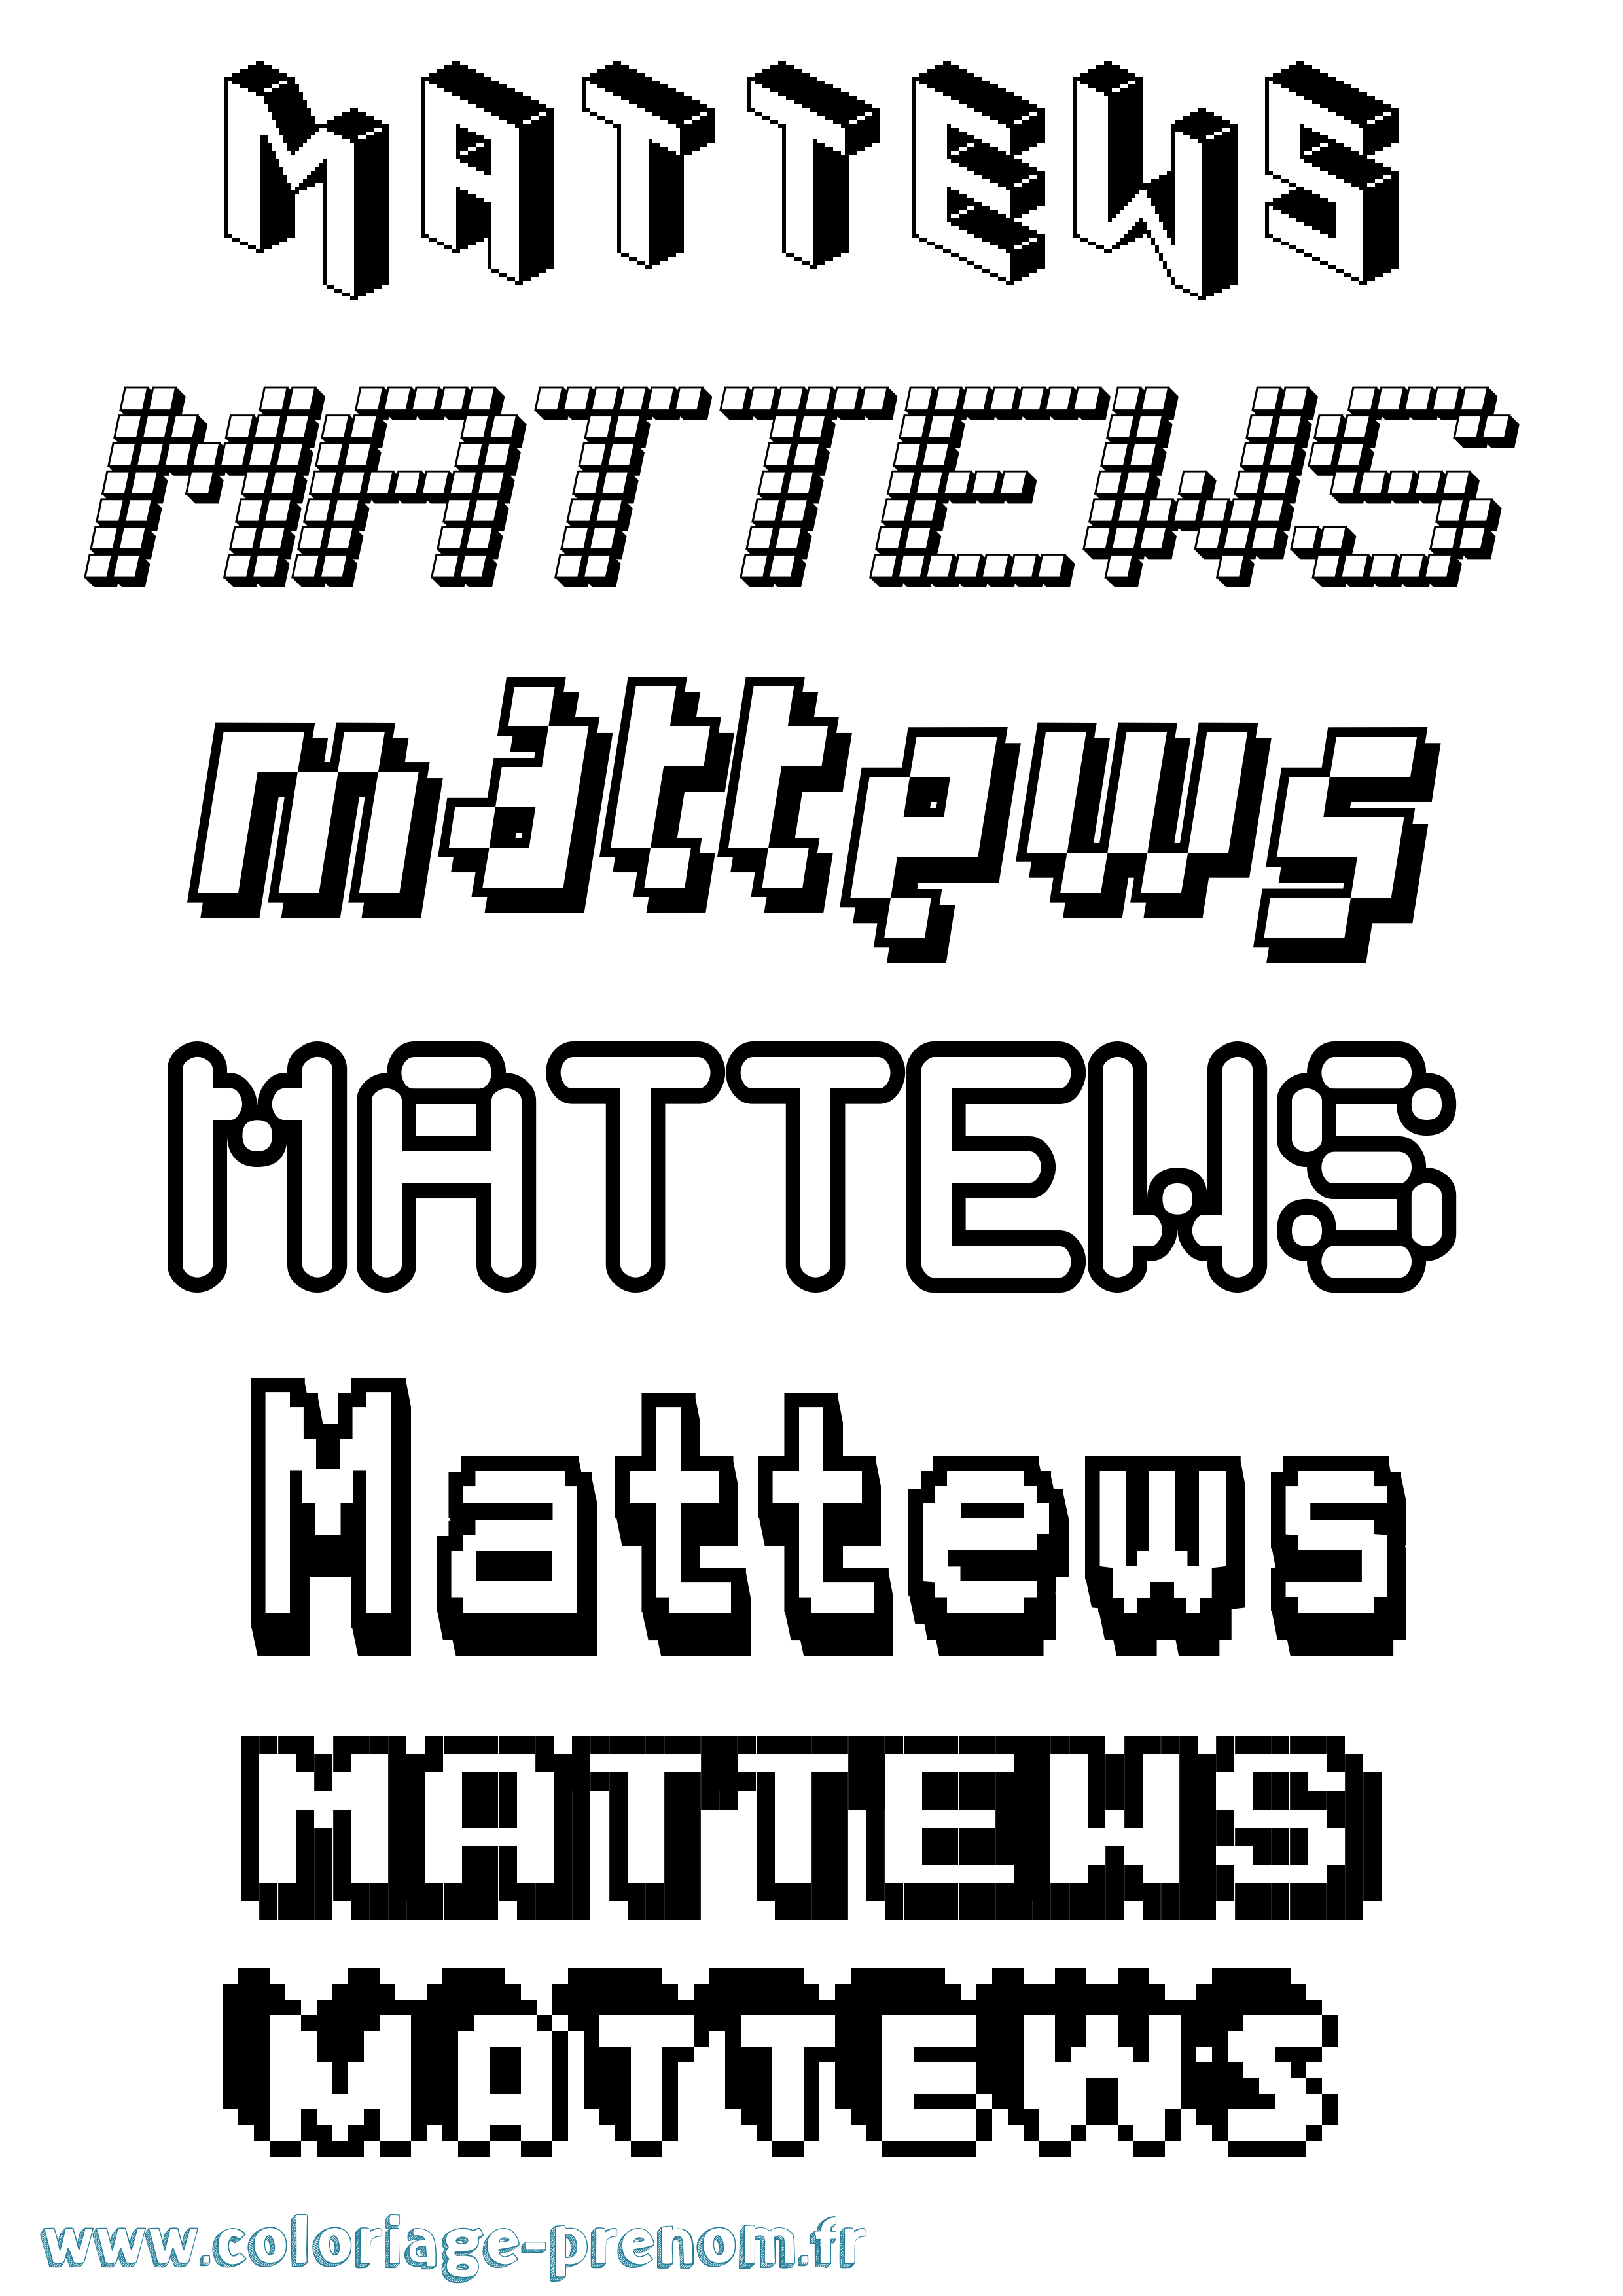 Coloriage prénom Mattews Pixel